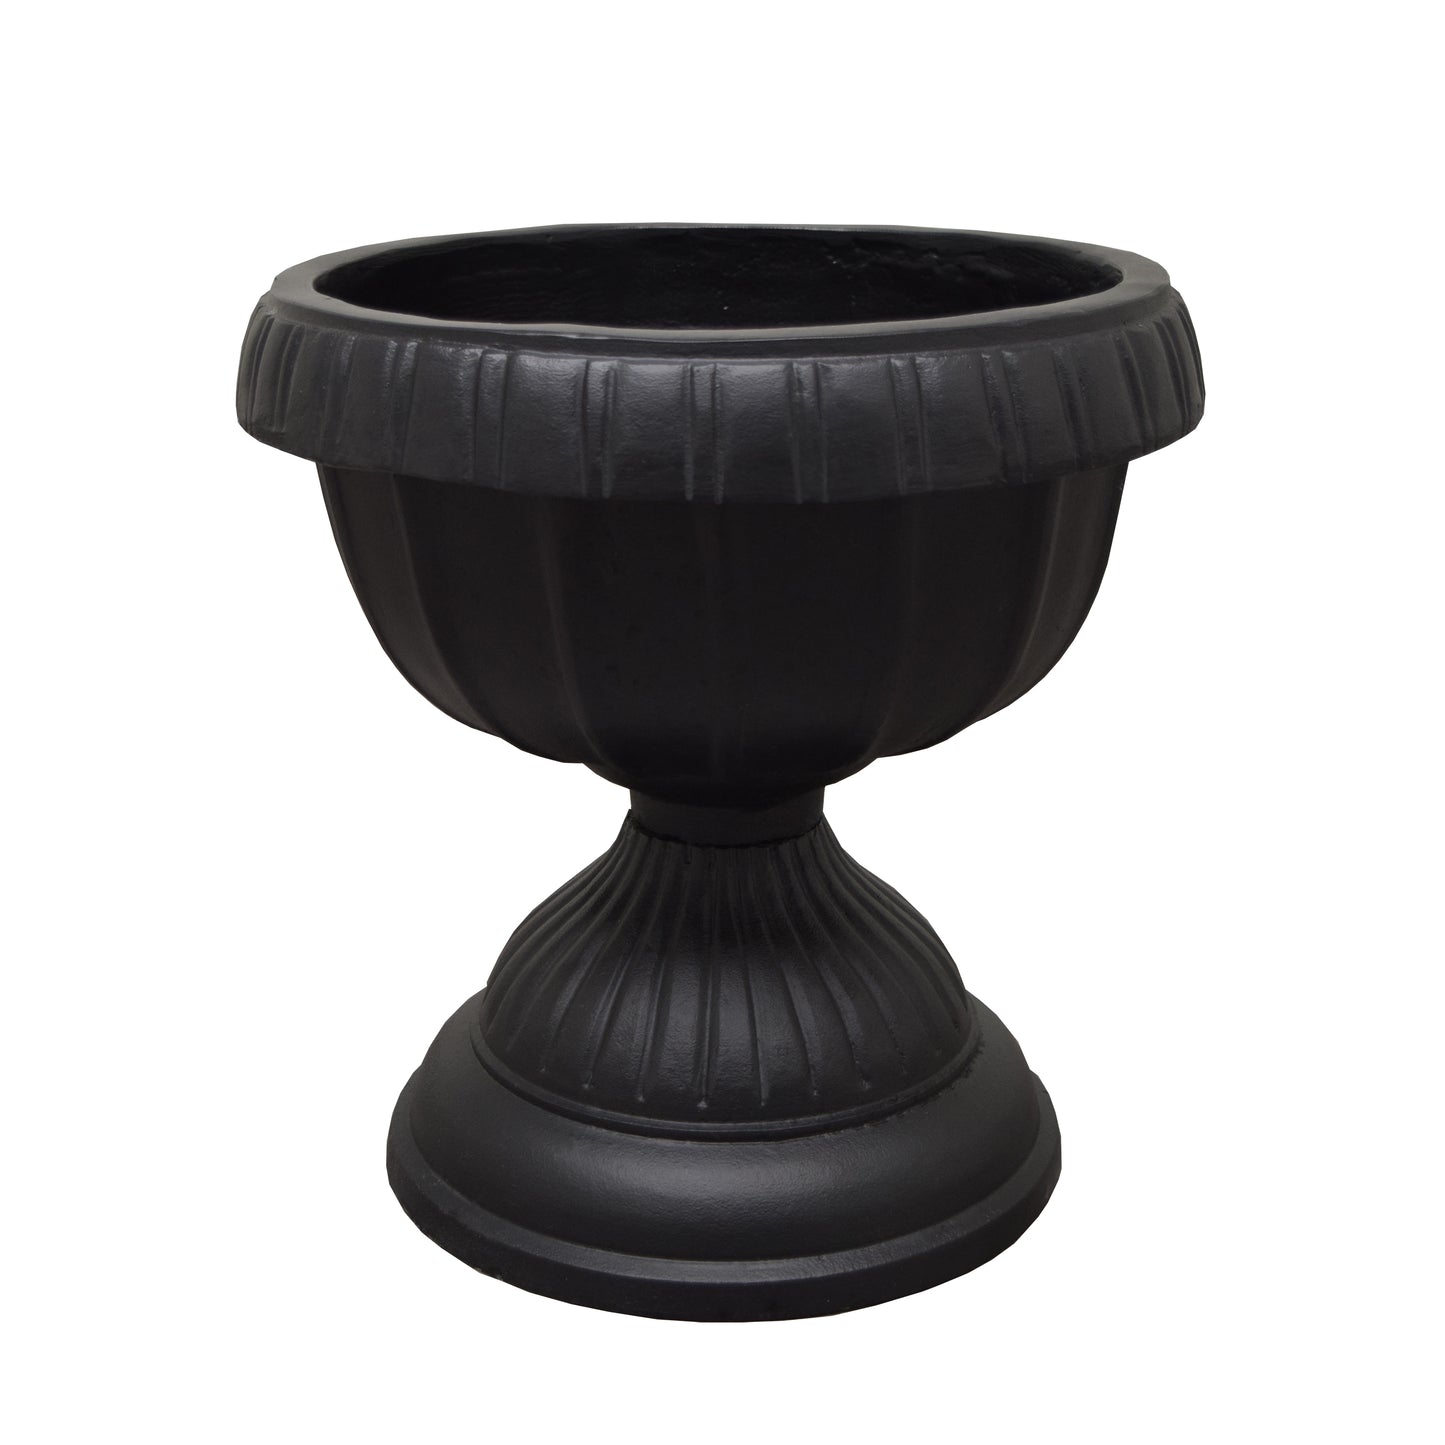 Ornate Round Cast Aluminum Metal 35-in Bird Bath Planter Vase Combo